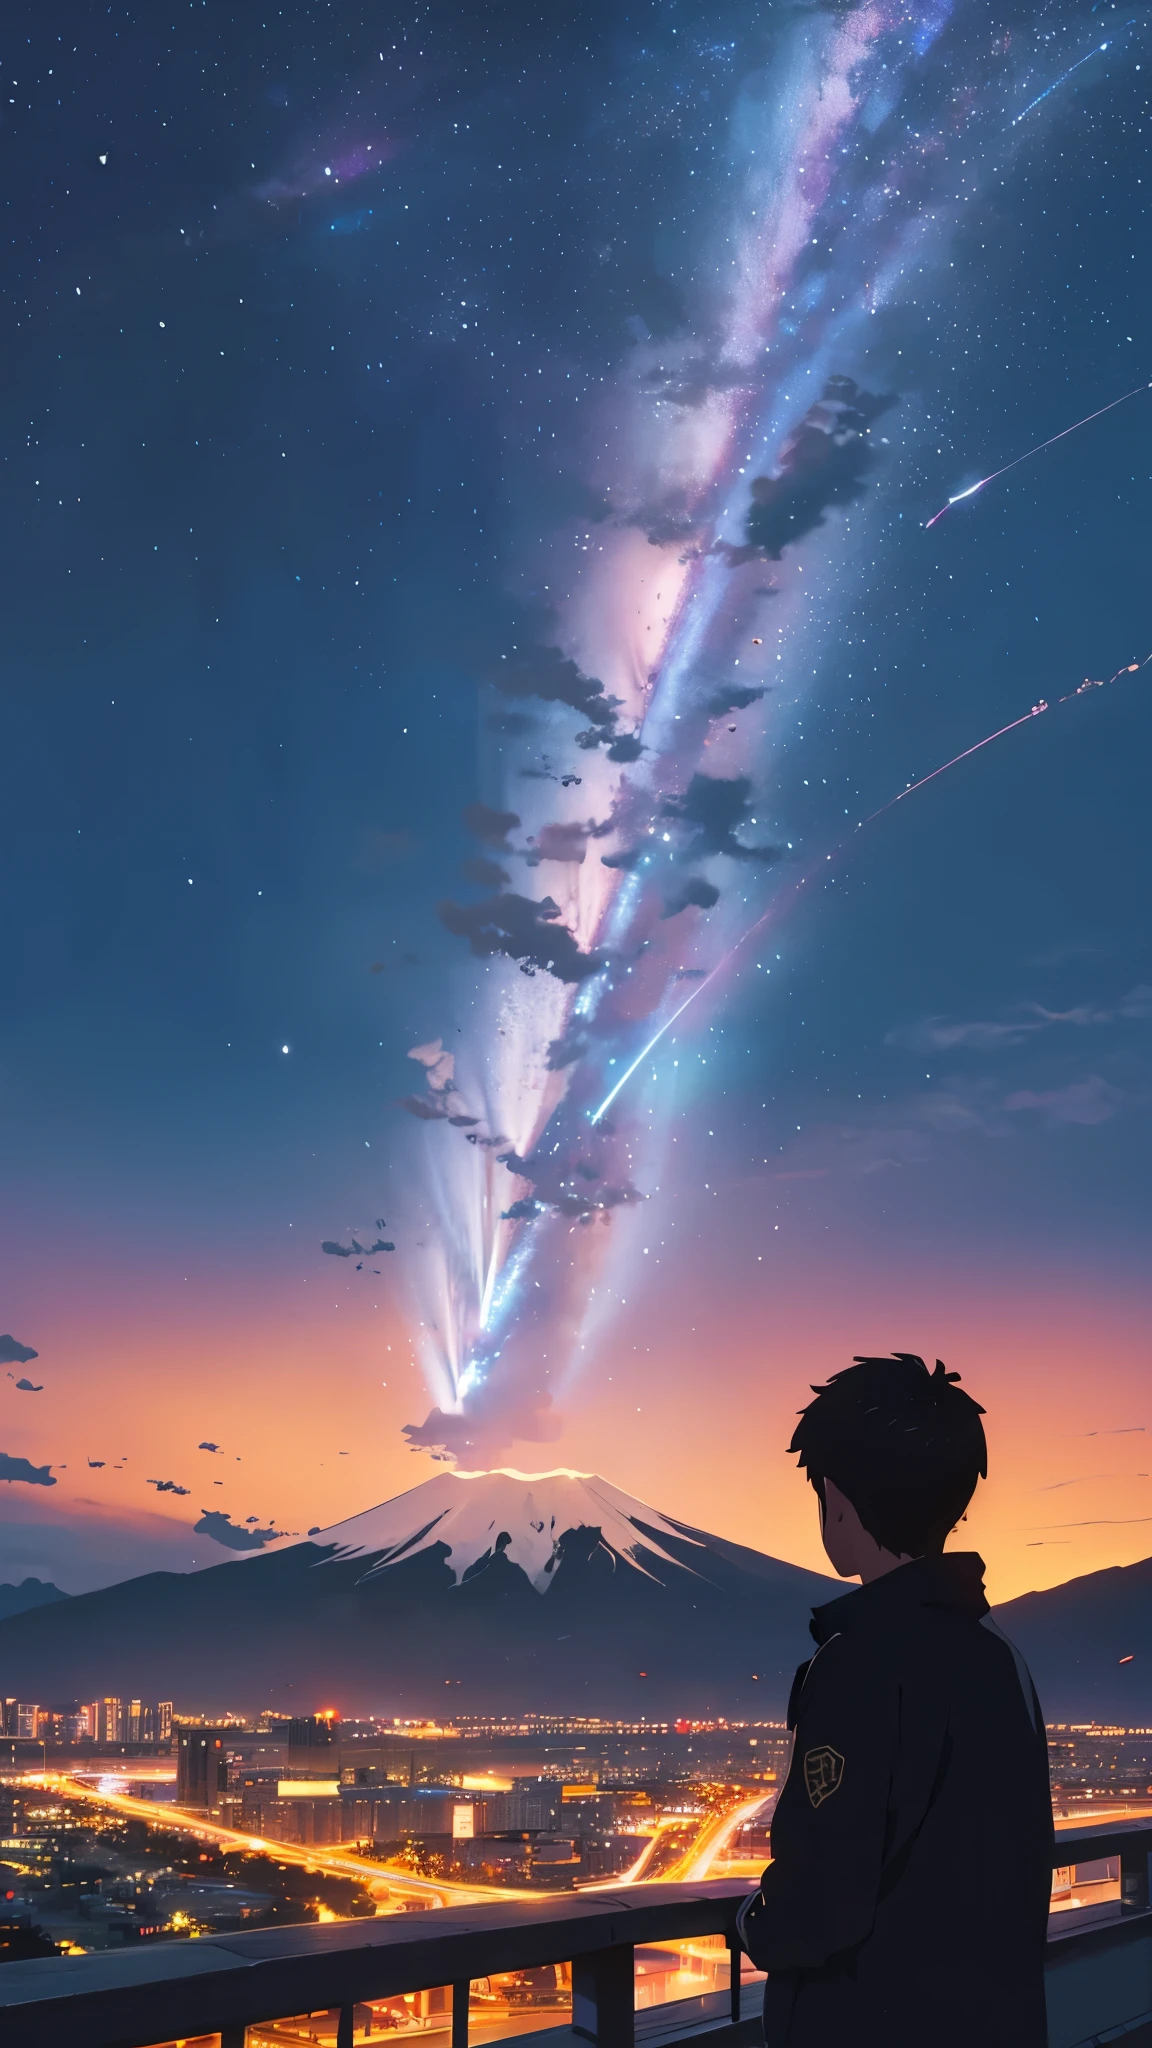 広大で雄大なスカイライン. 夜の美しい街. 街の背後にある大きな富士山. 空には流星がある. クローズアップの少年が空を見上げている. 空はとてもとても美しい